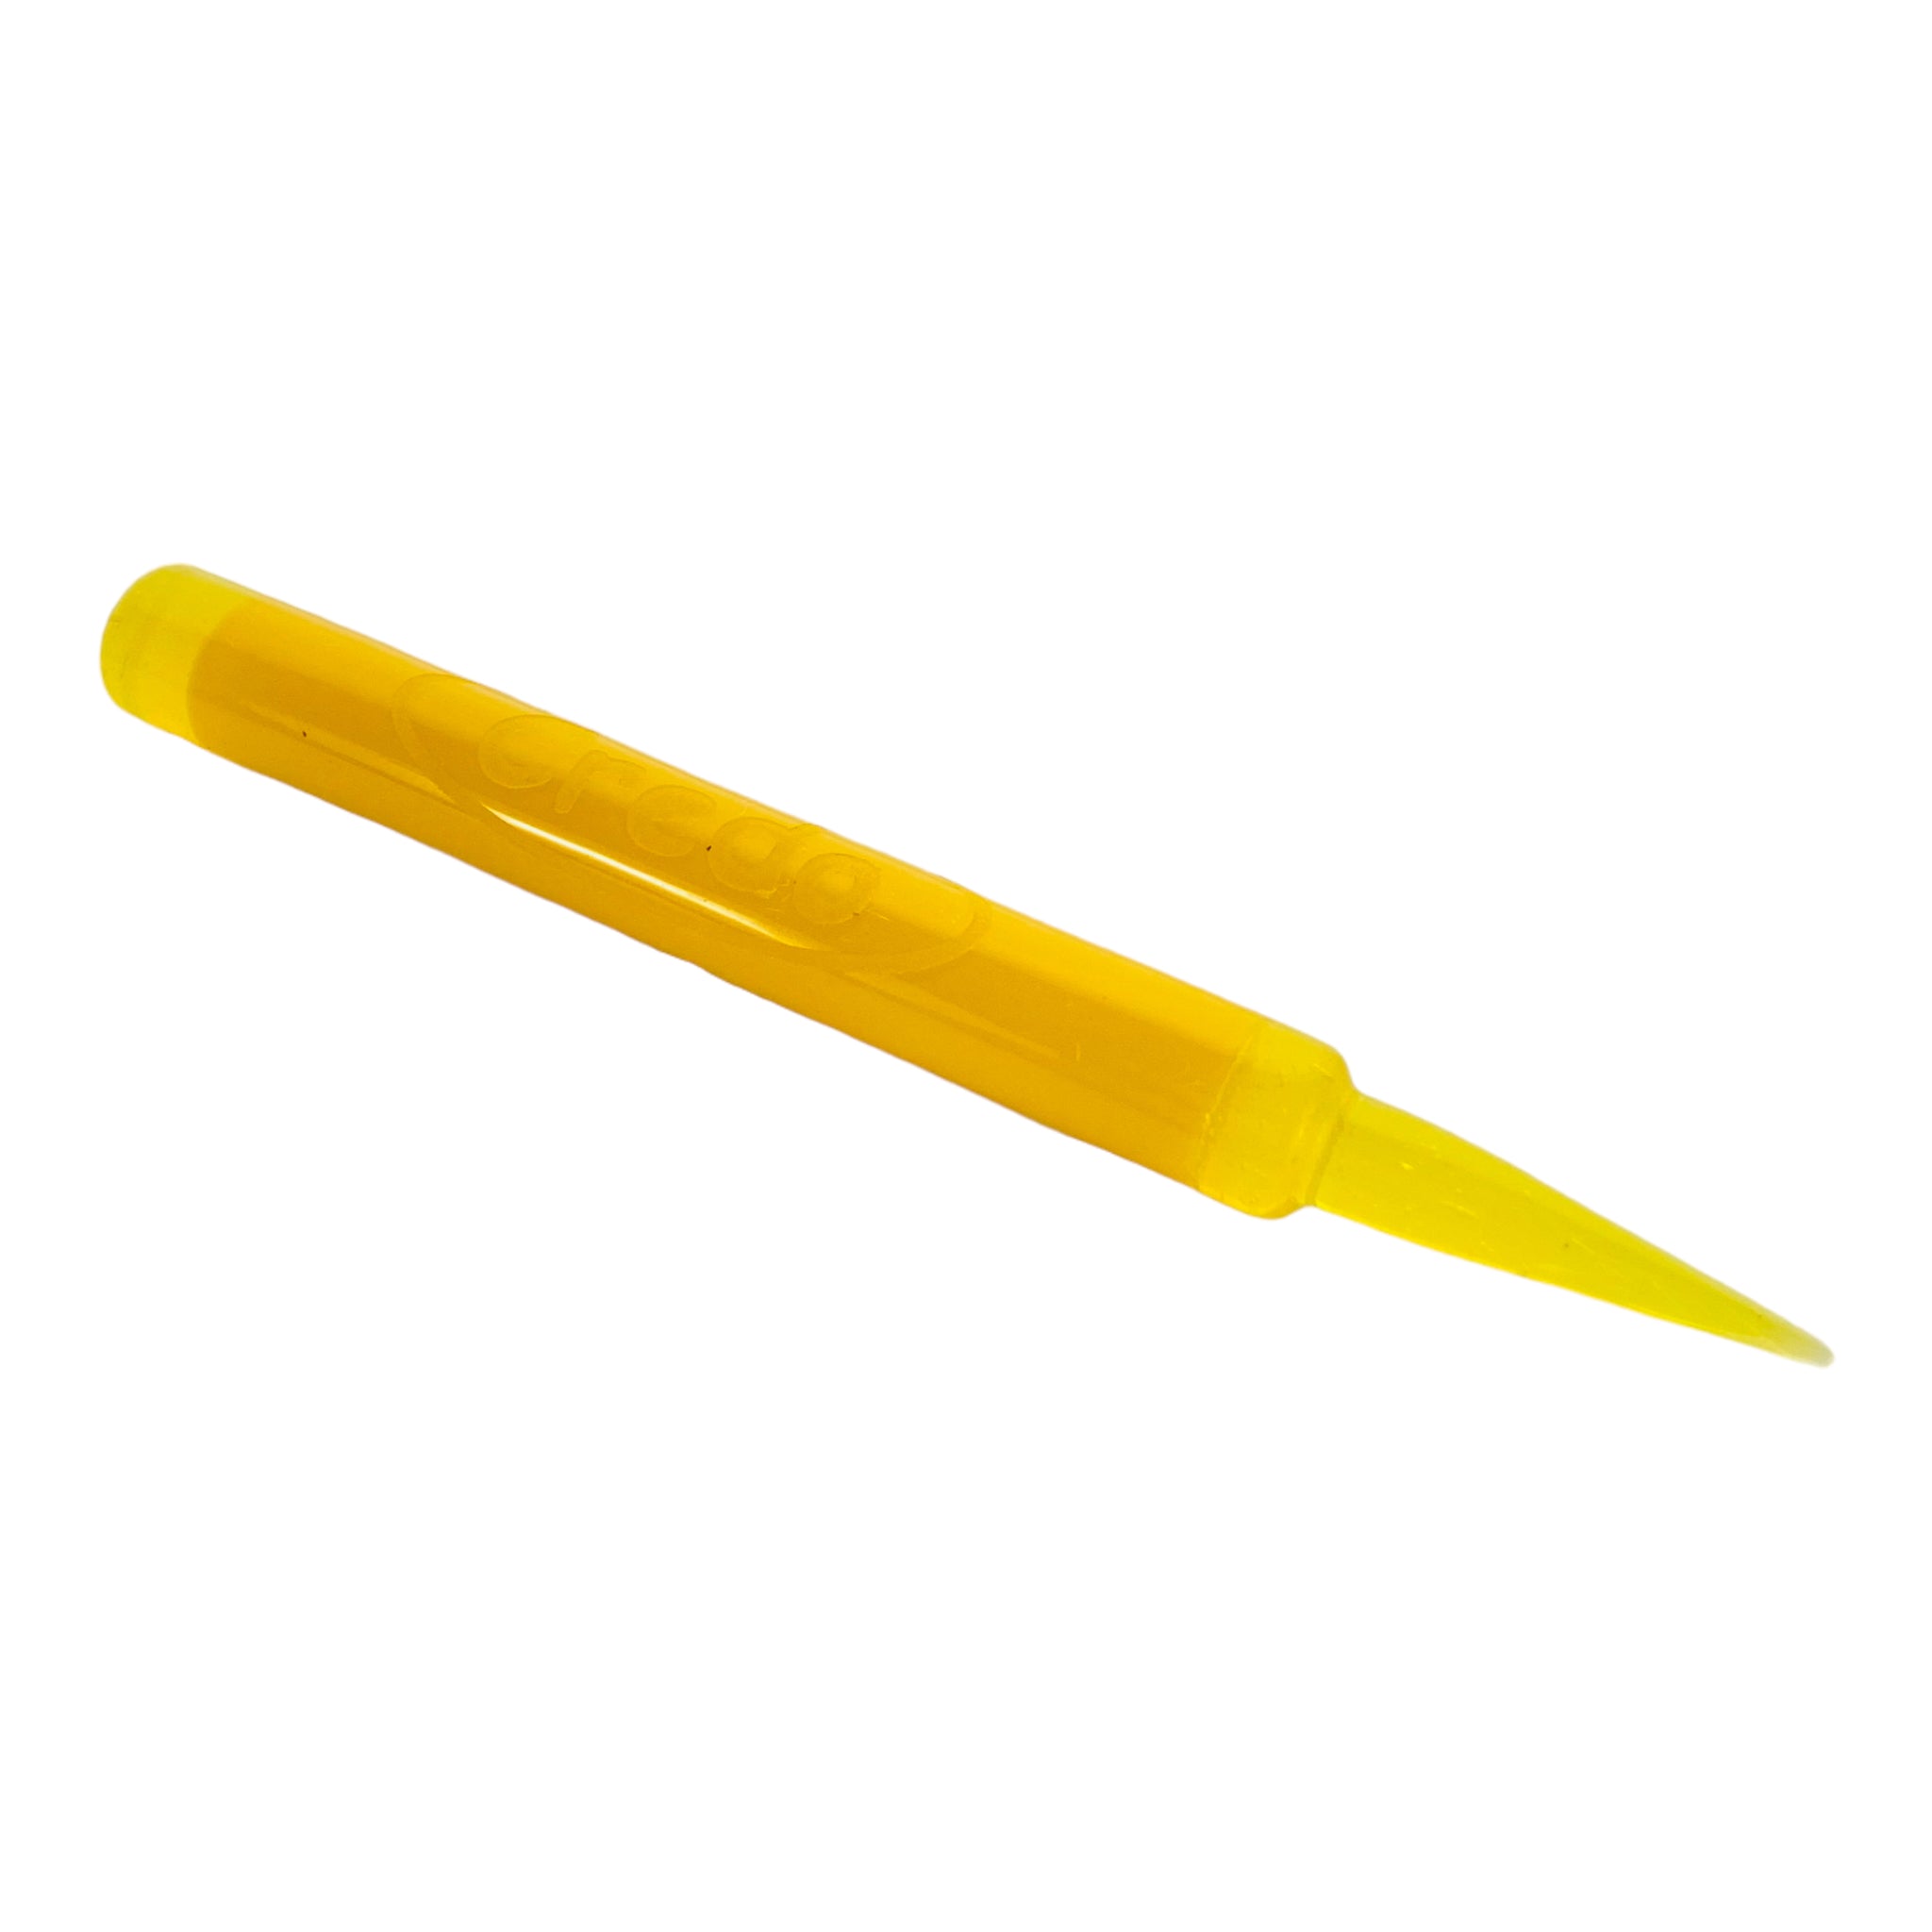 Creedo Glass - Yellow Glass Crayon Dab Tool